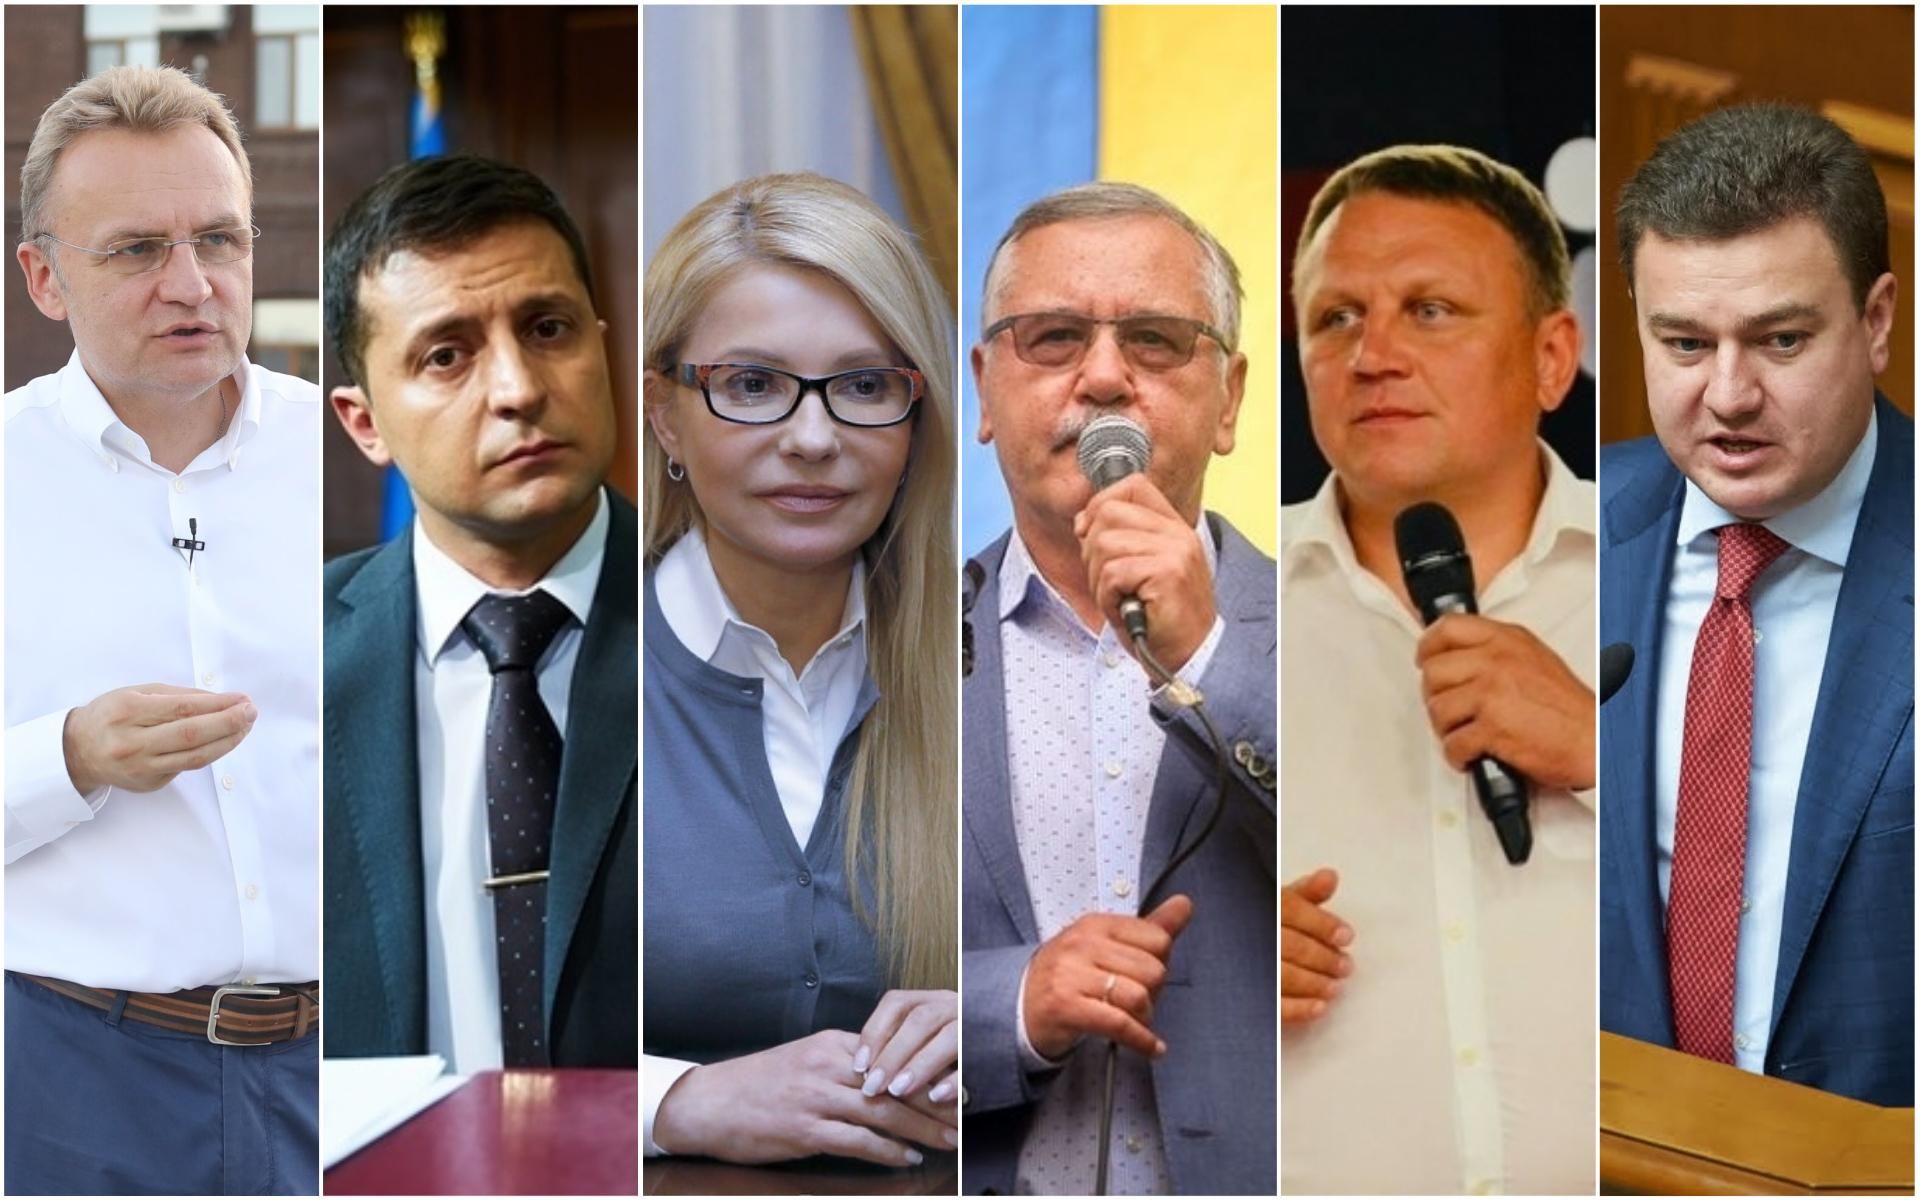 Меморандум о выборах 2019 подписали кандидаты в президенты Украины 2019